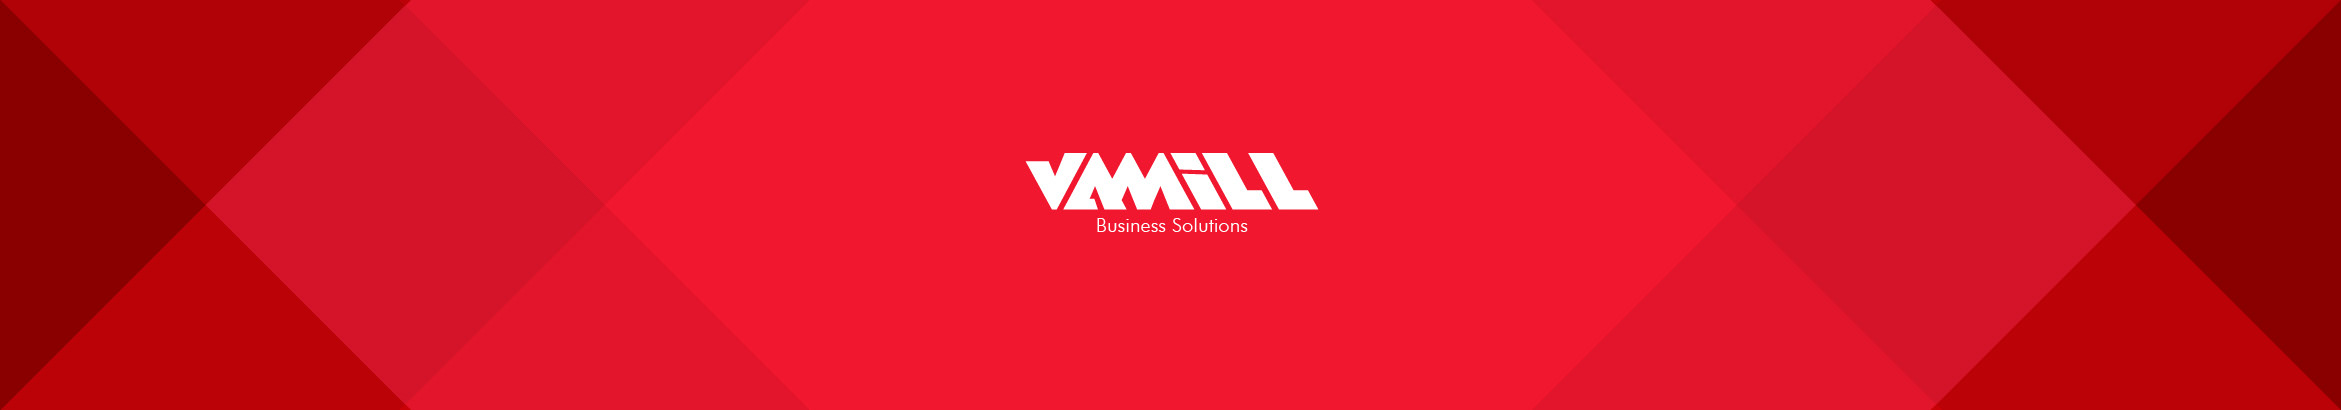 Vamill Media's profile banner